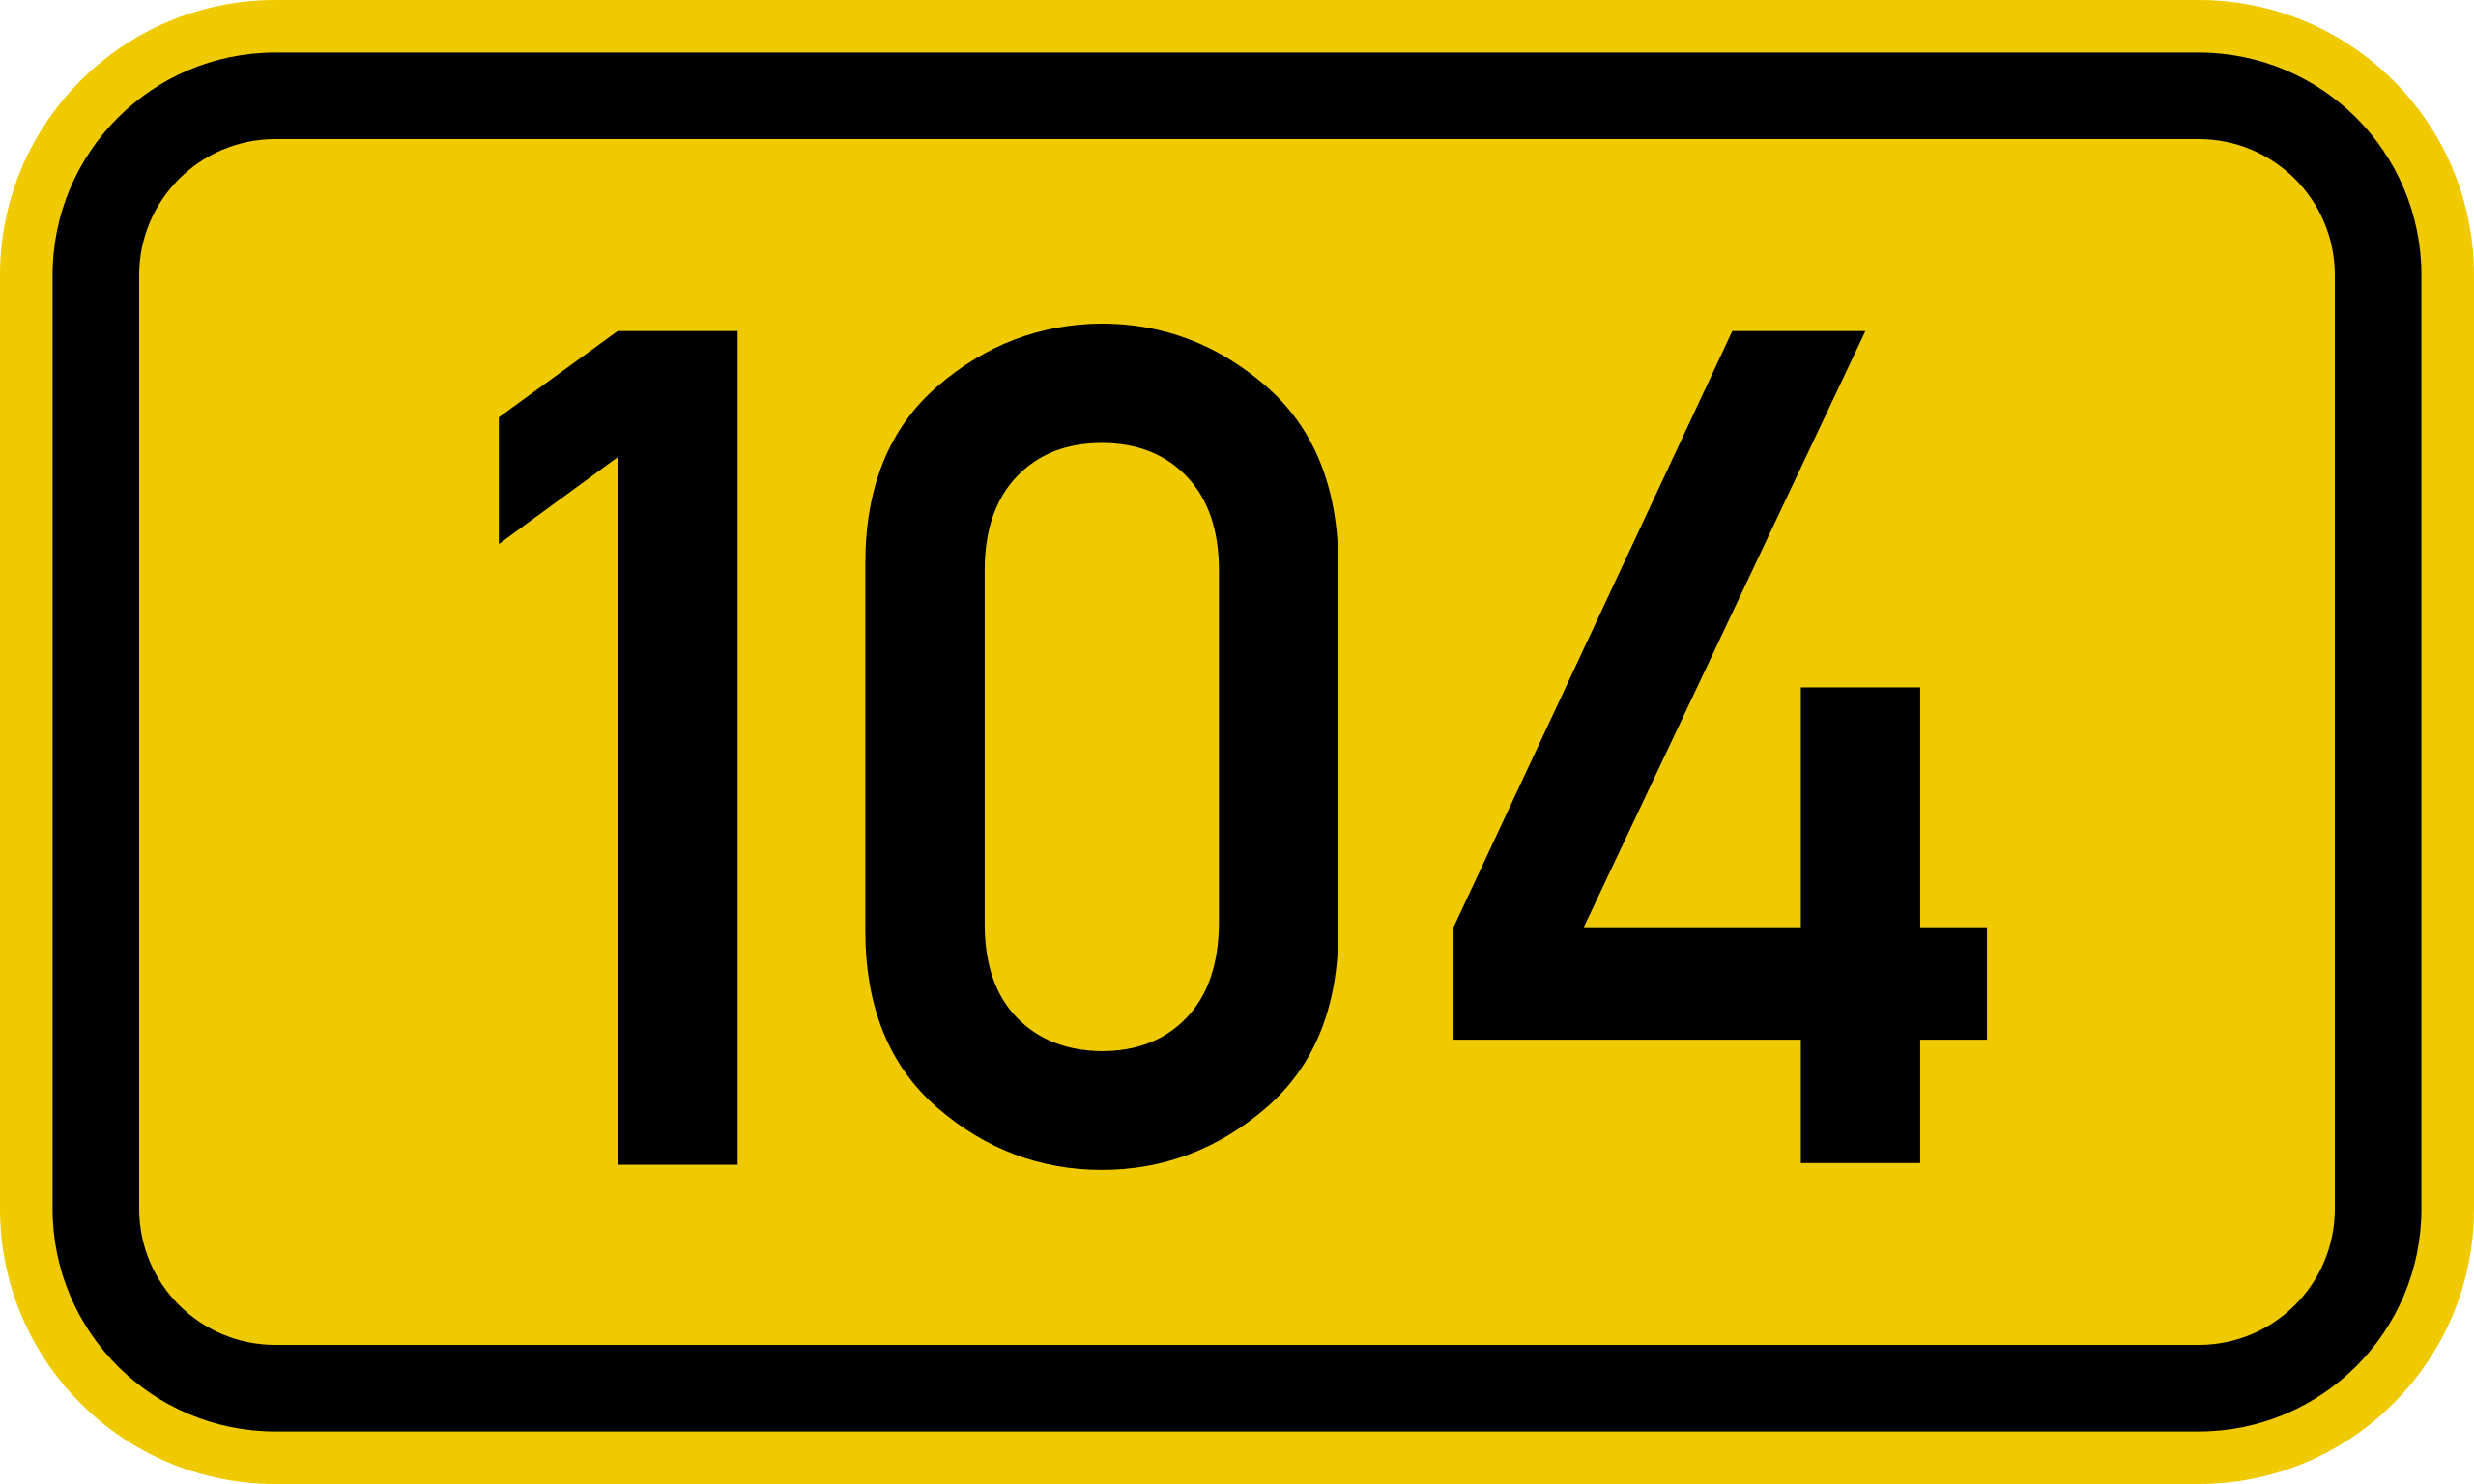 File:Bundesstraße 104 number.svg - Wikipedia